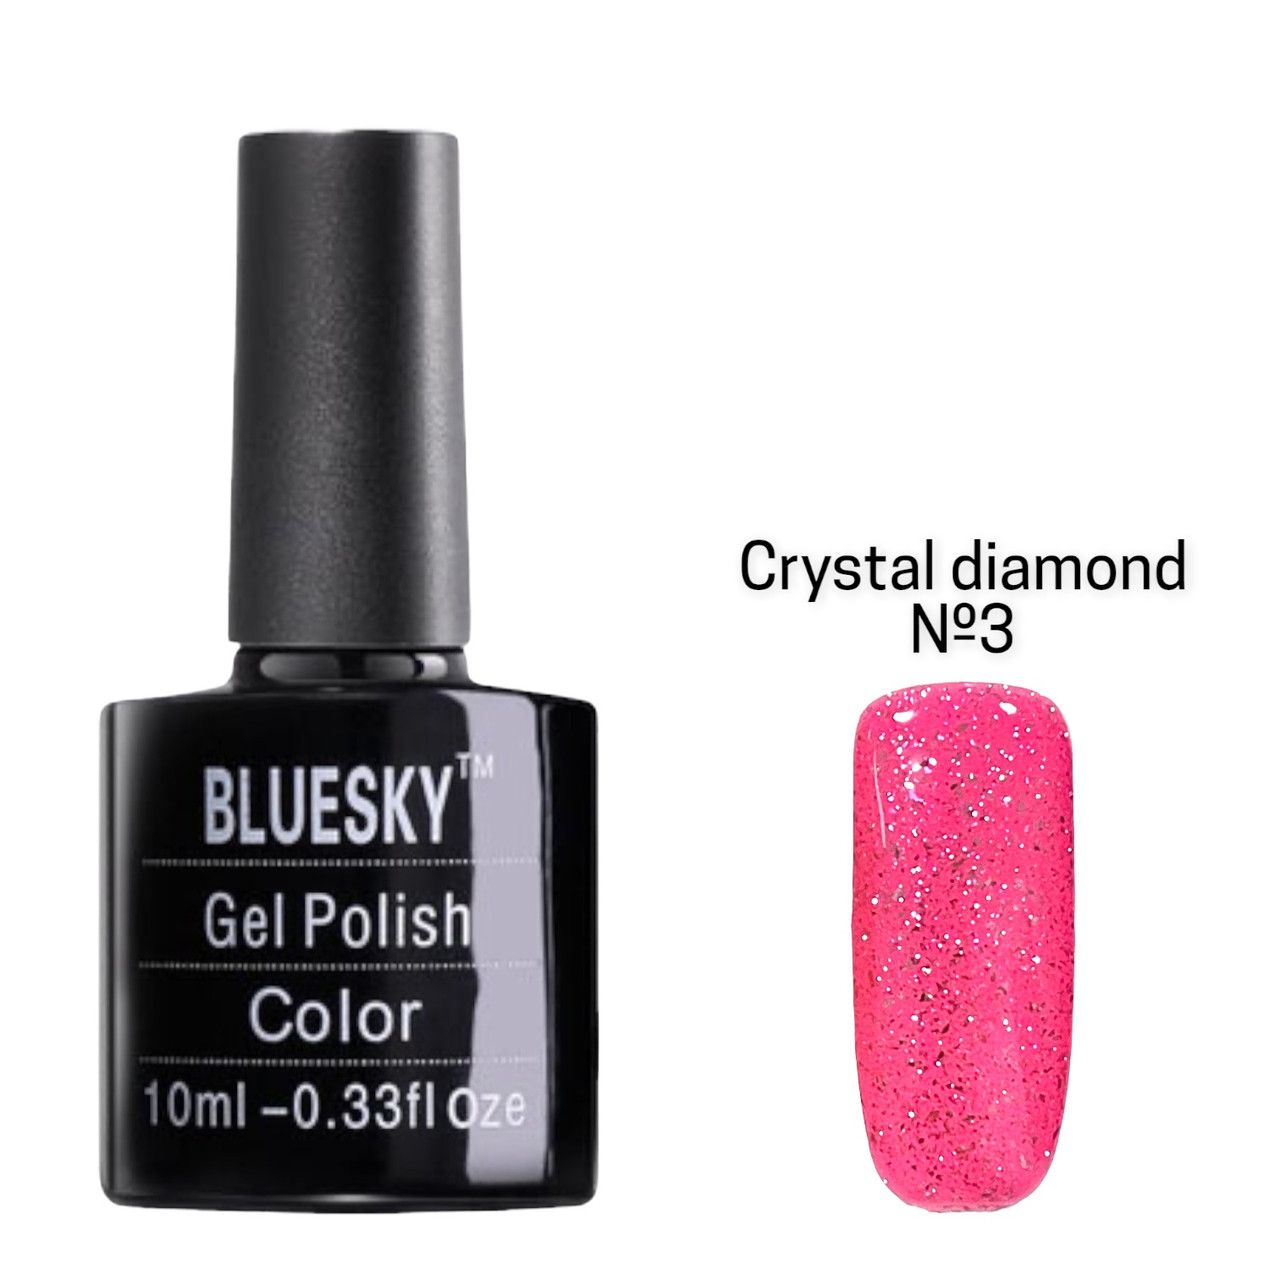 Гель-лак кольорової BLUESKY gel polish для дизайну нігтів 10 ml. Crystal diamond No3